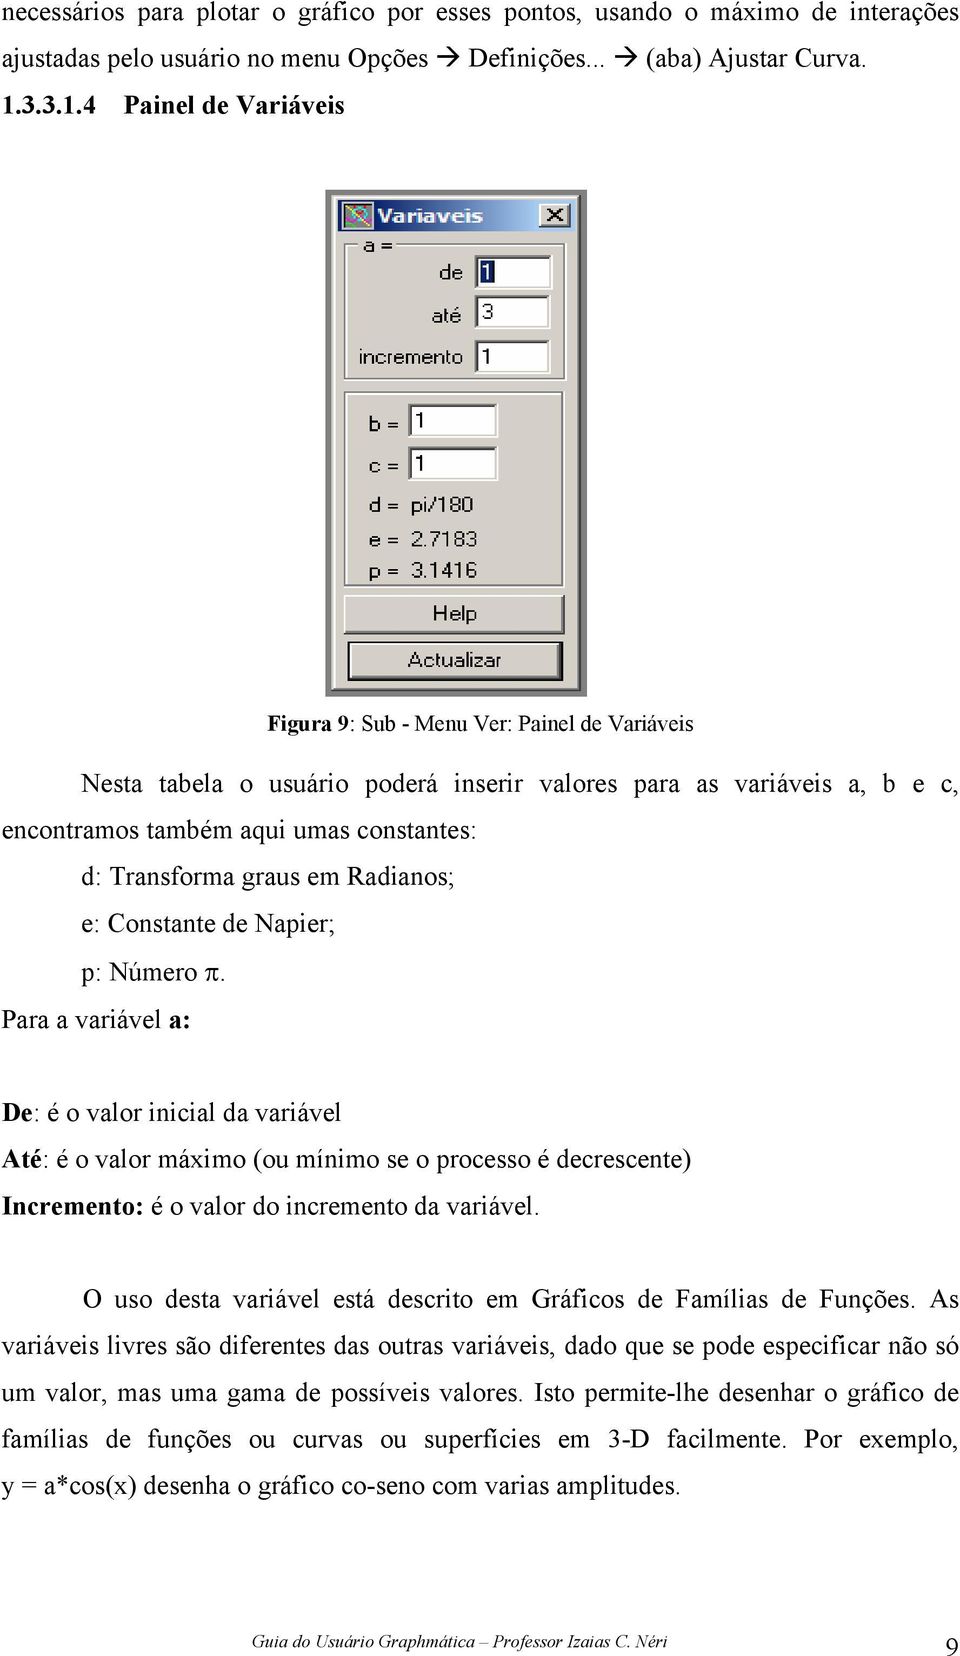 4 Painel de Variáveis Figura 9: Sub - Menu Ver: Painel de Variáveis Nesta tabela o usuário poderá inserir valores para as variáveis a, b e c, encontramos também aqui umas constantes: d: Transforma